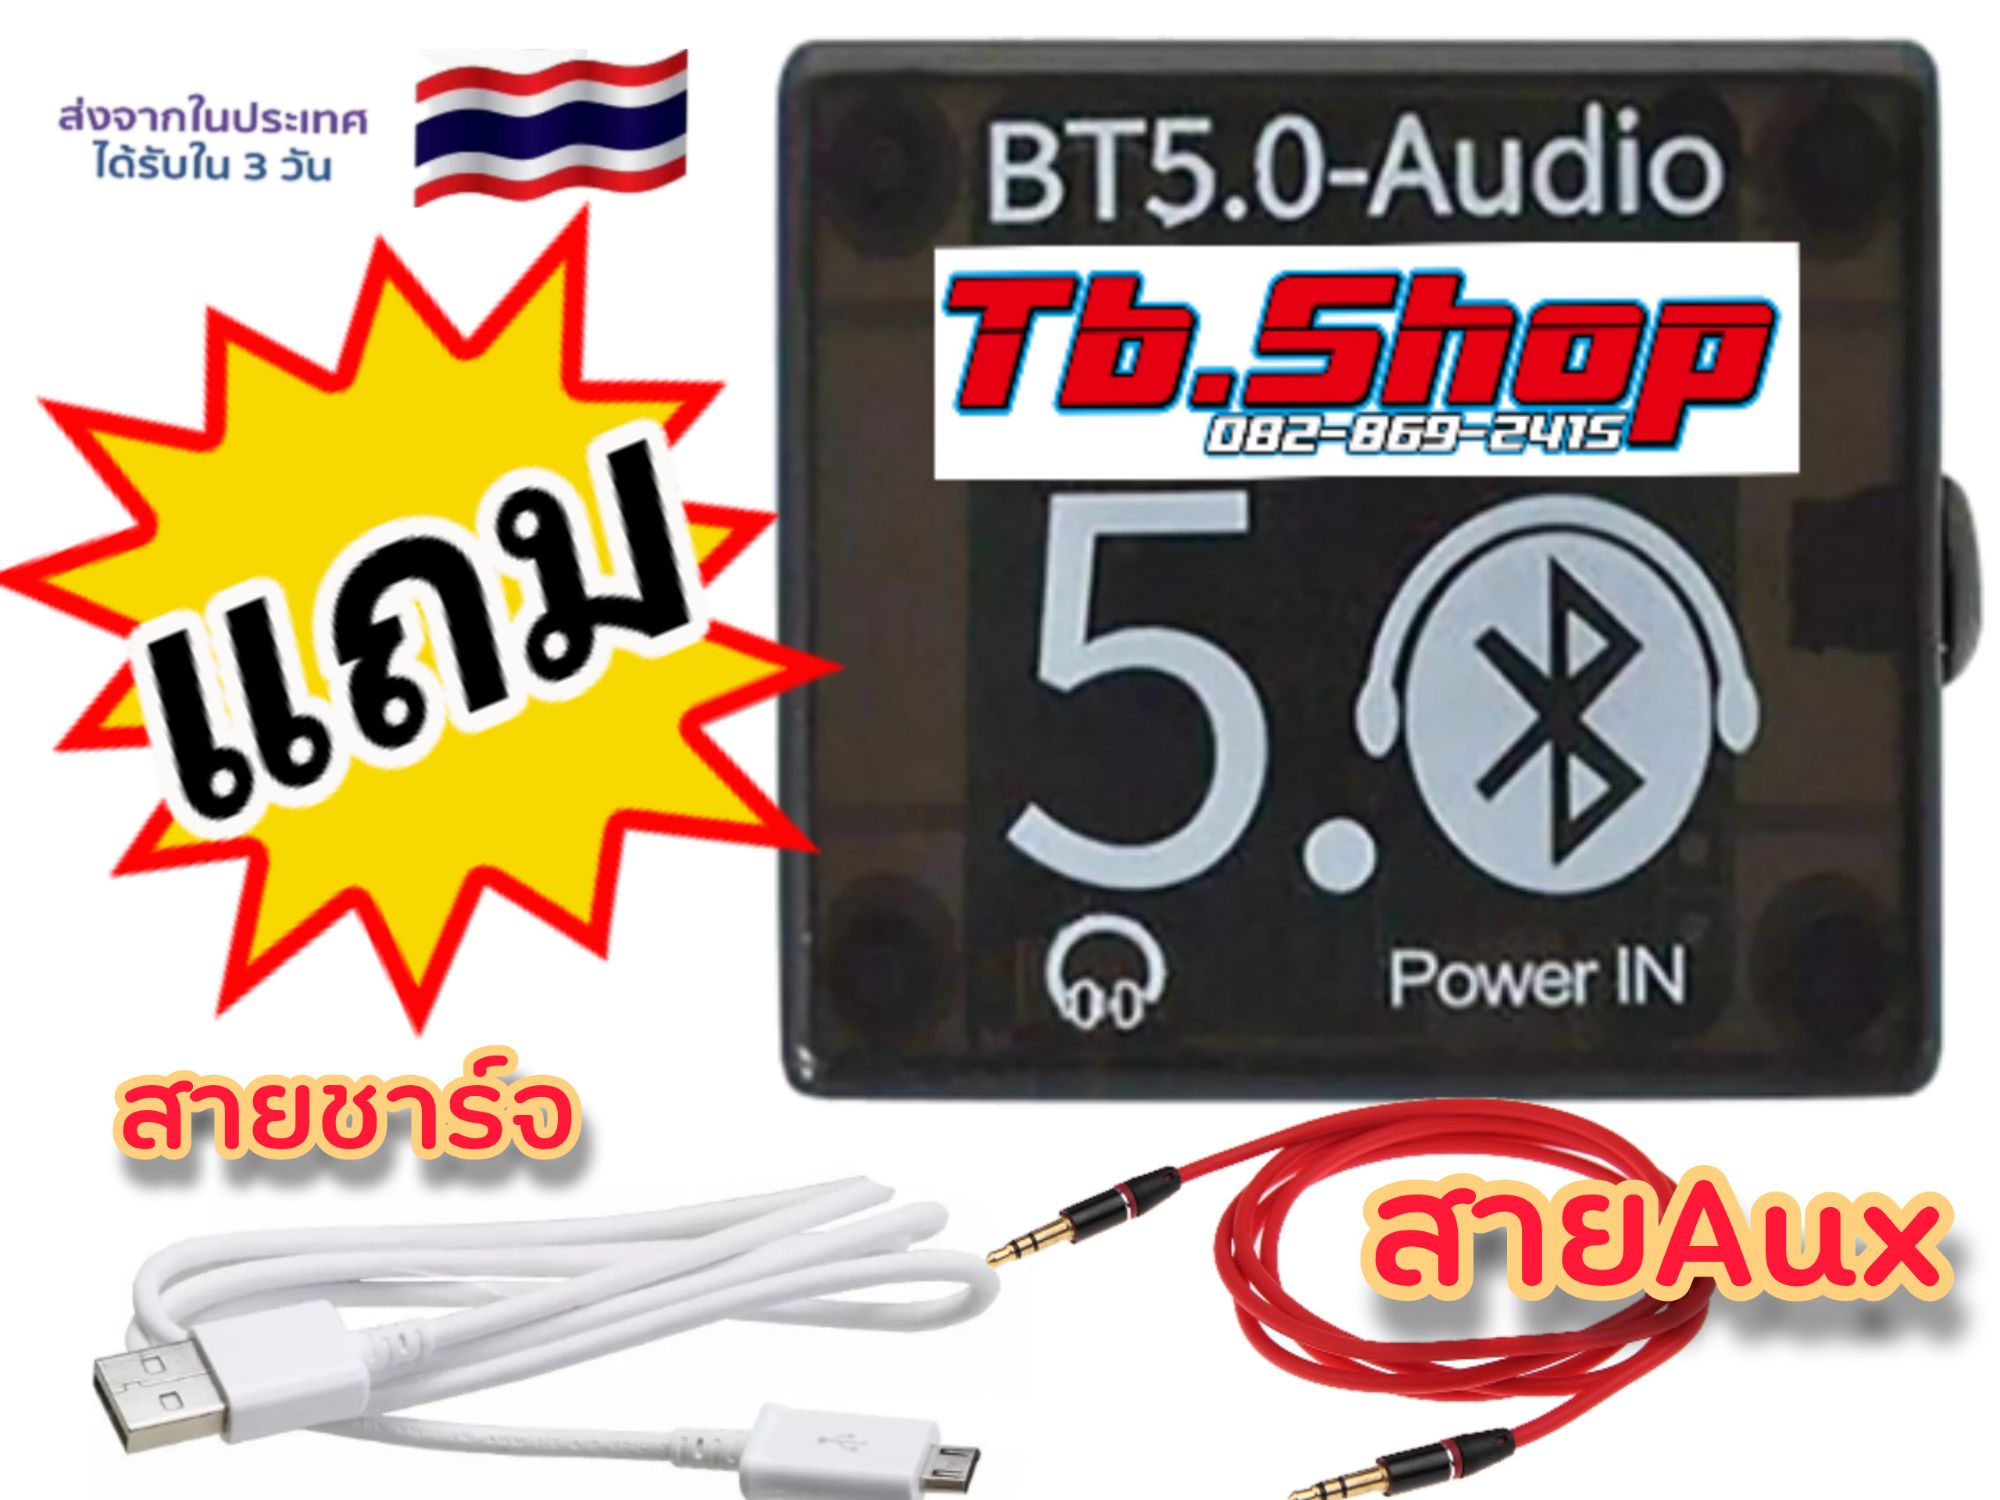 BT5.0-Audio บลูทูธ5.0 ส่งไกลเสียงดี สเตอริโอ